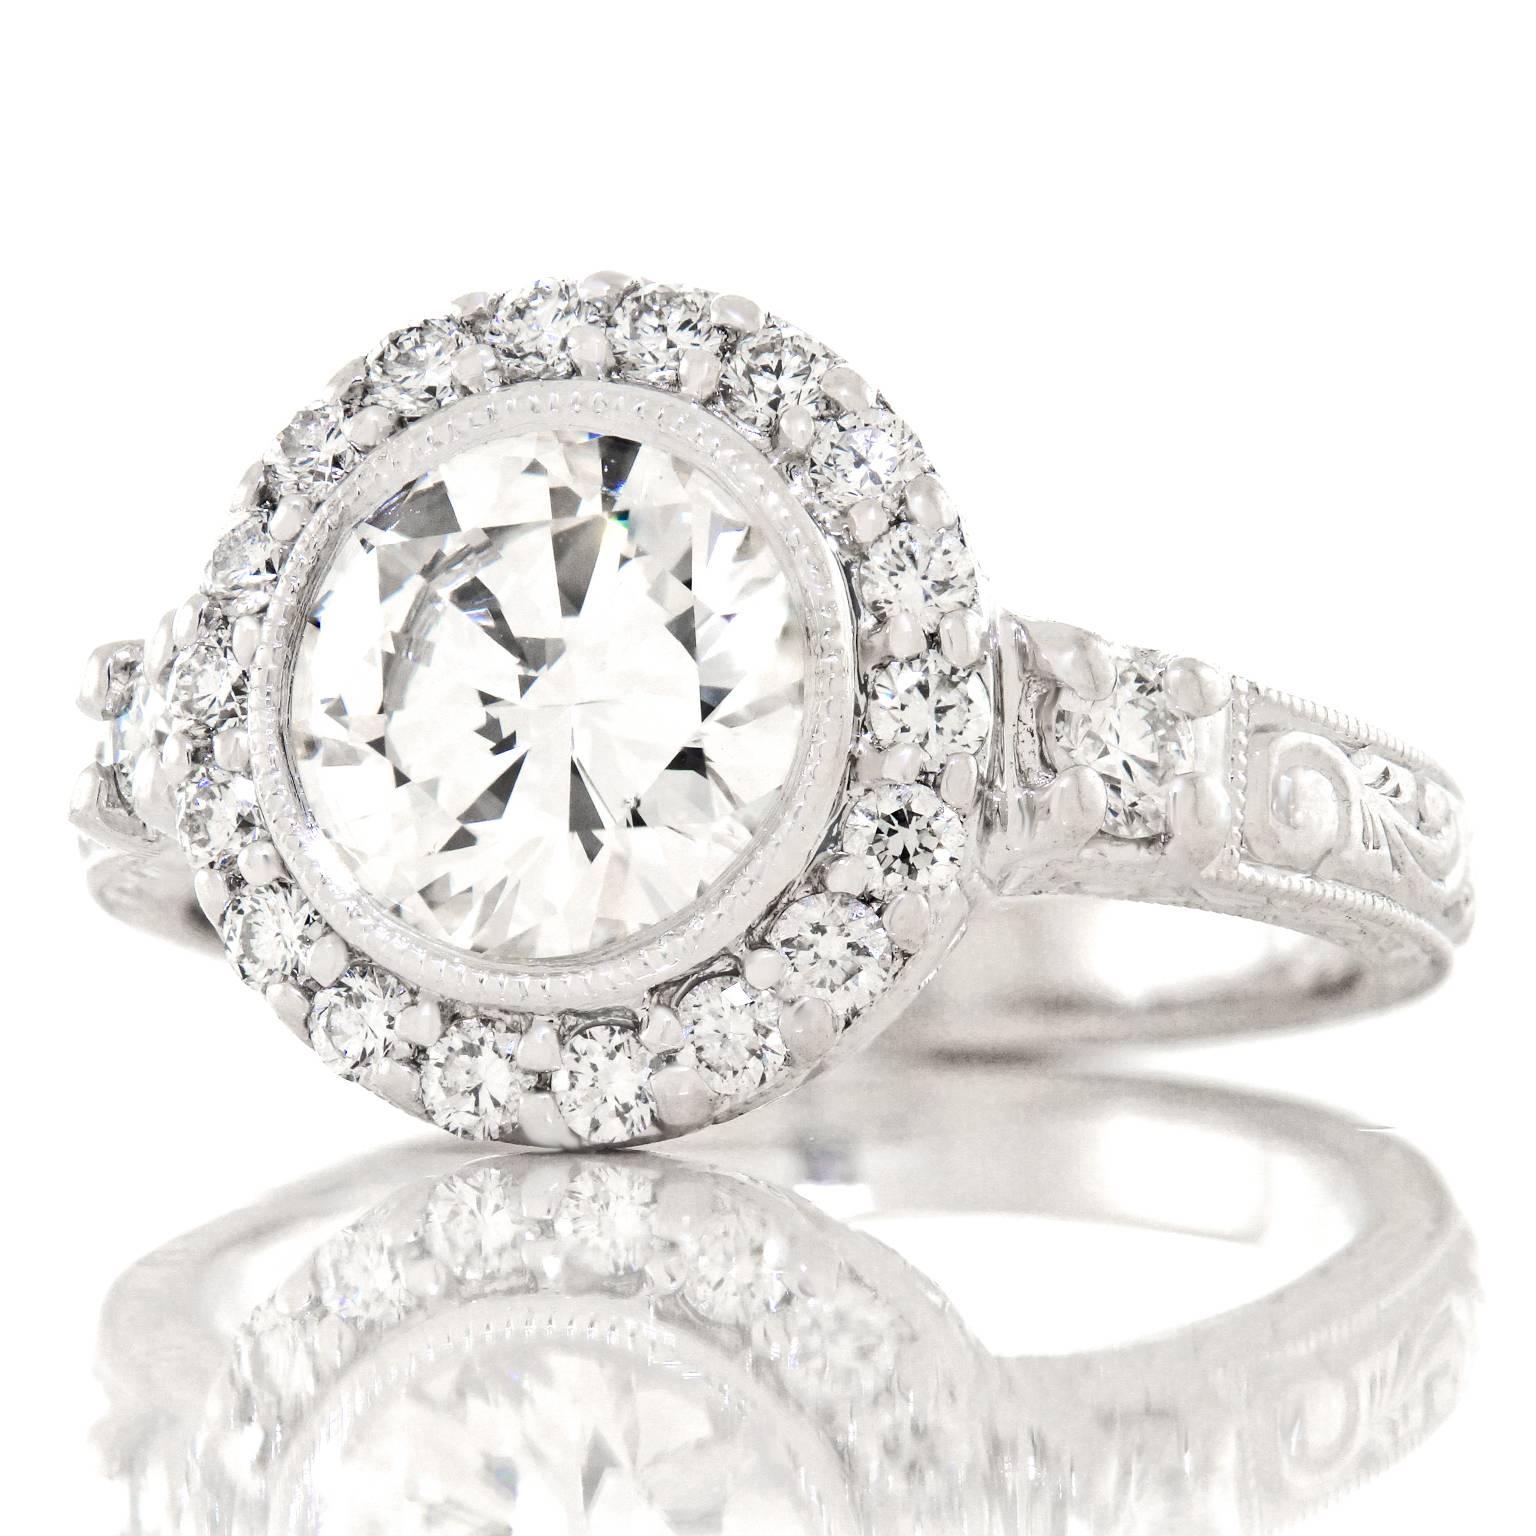 1.78 carat diamond ring price